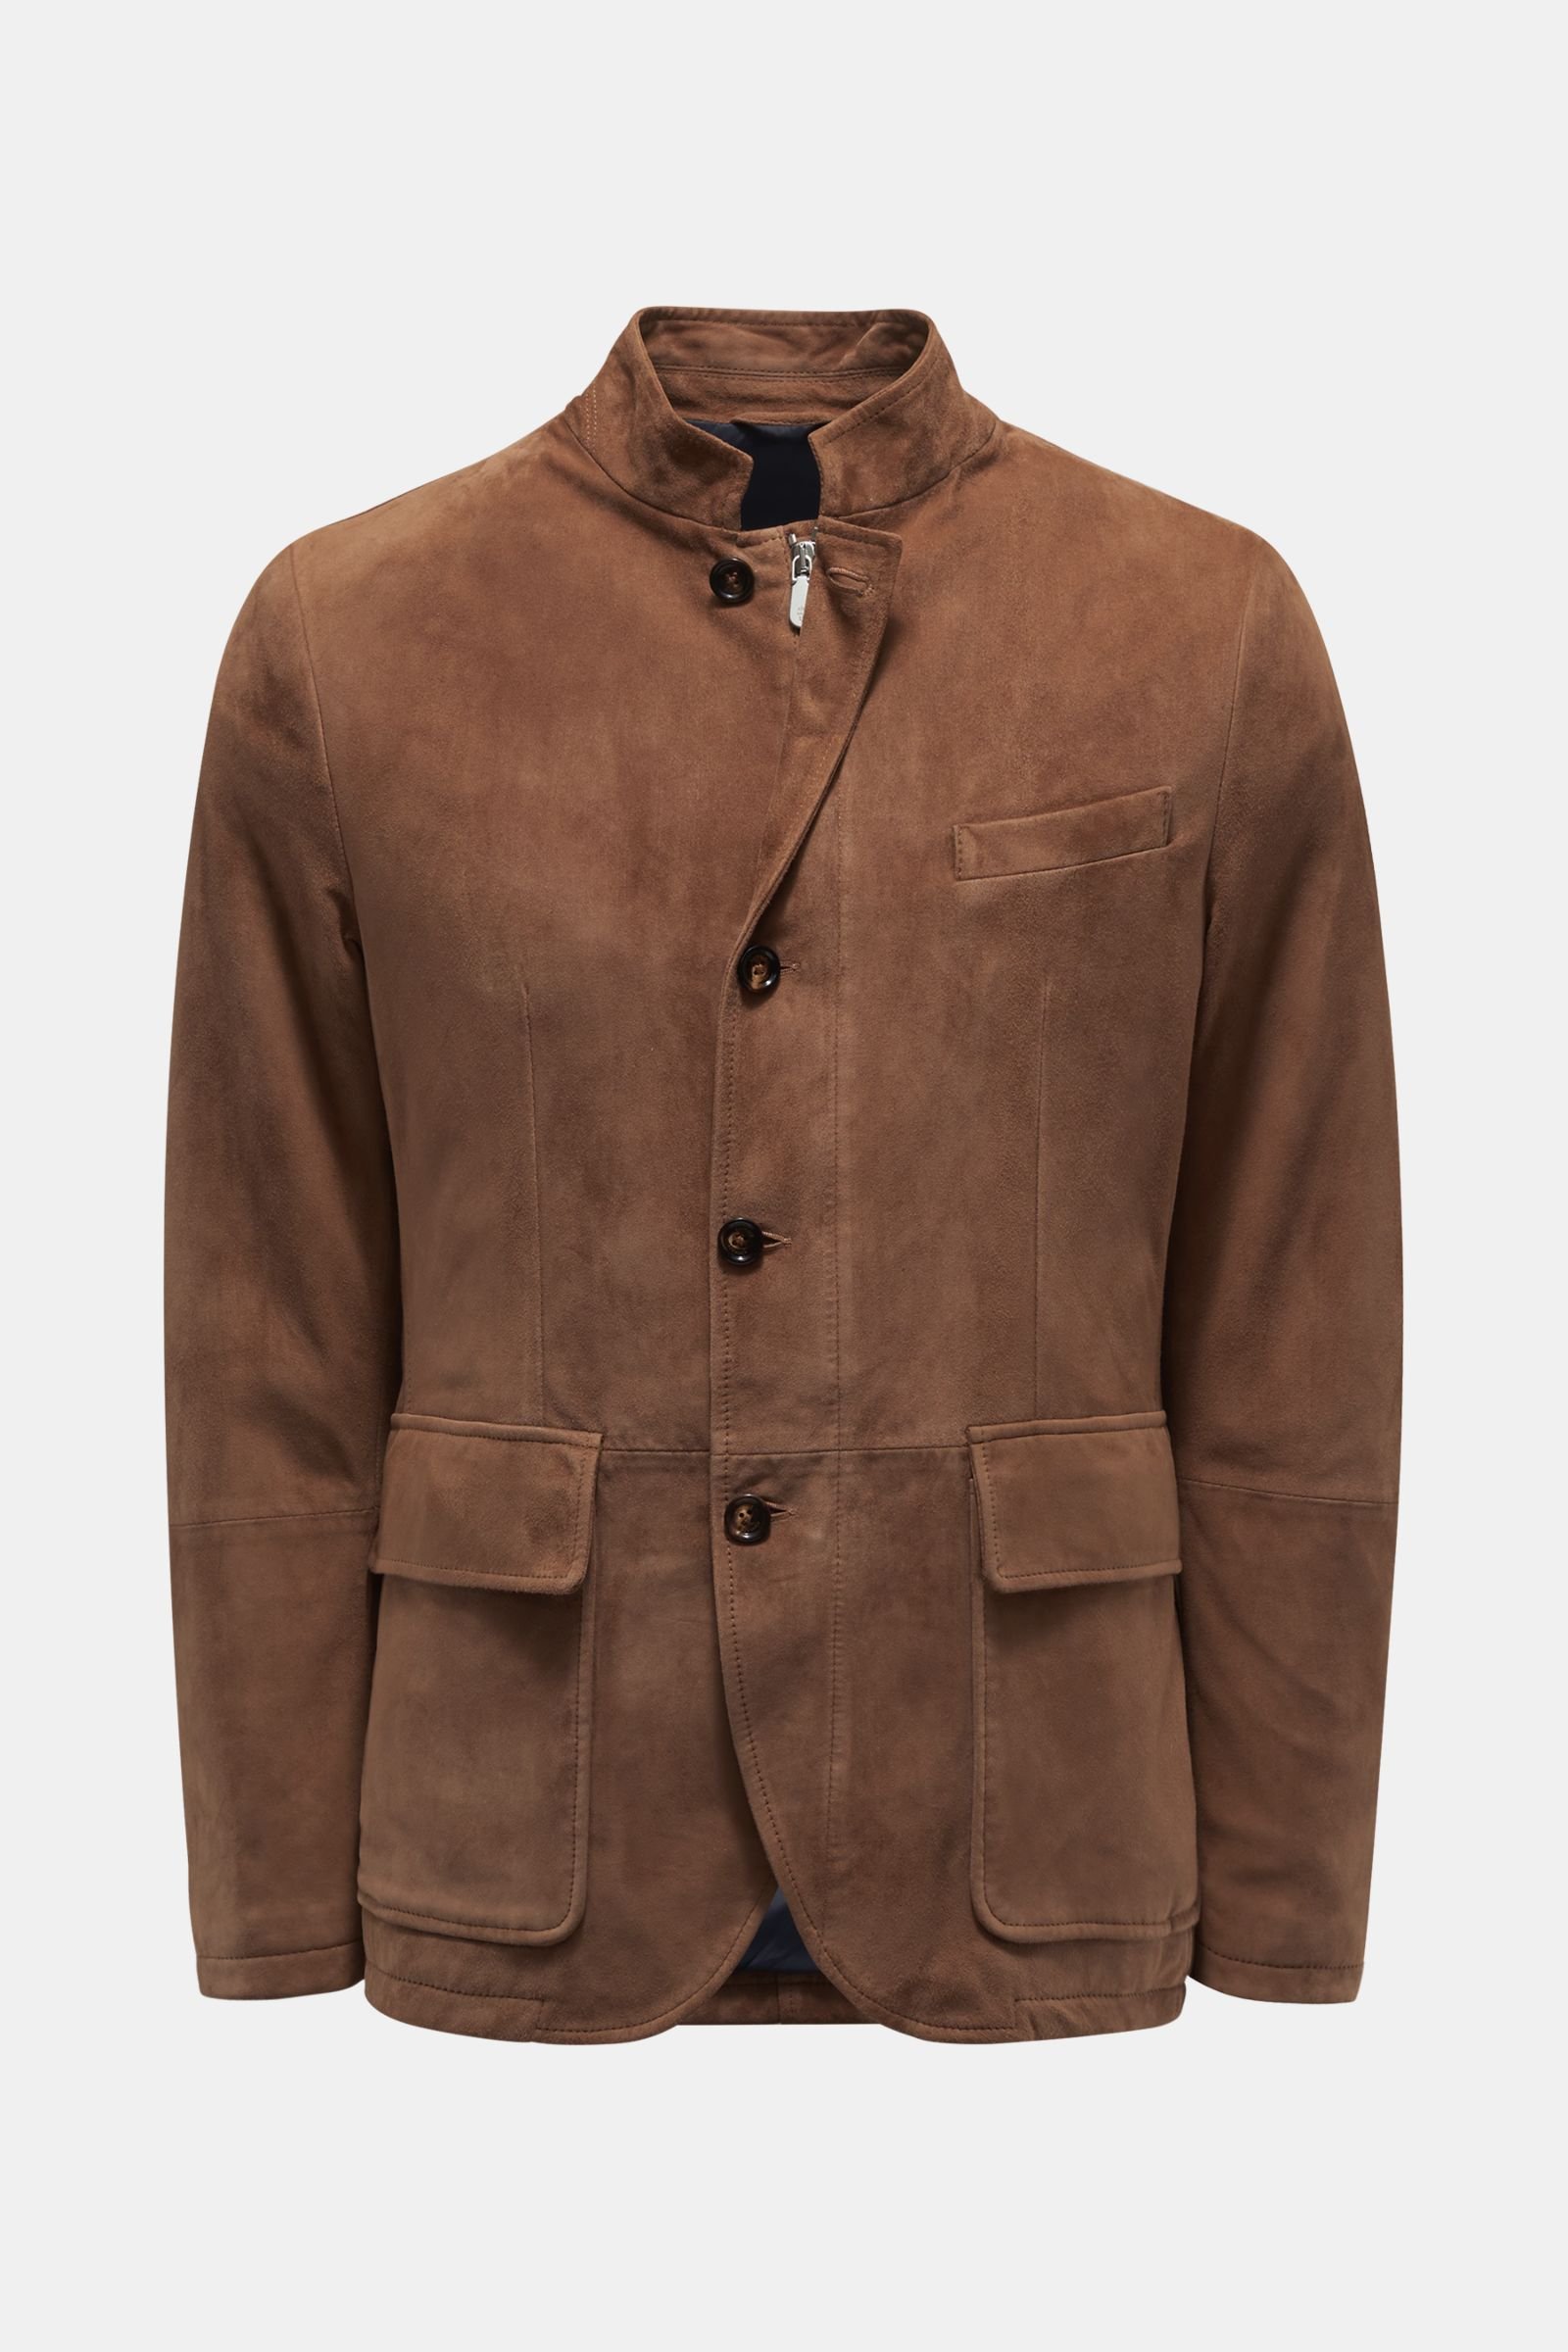 Suede jacket brown